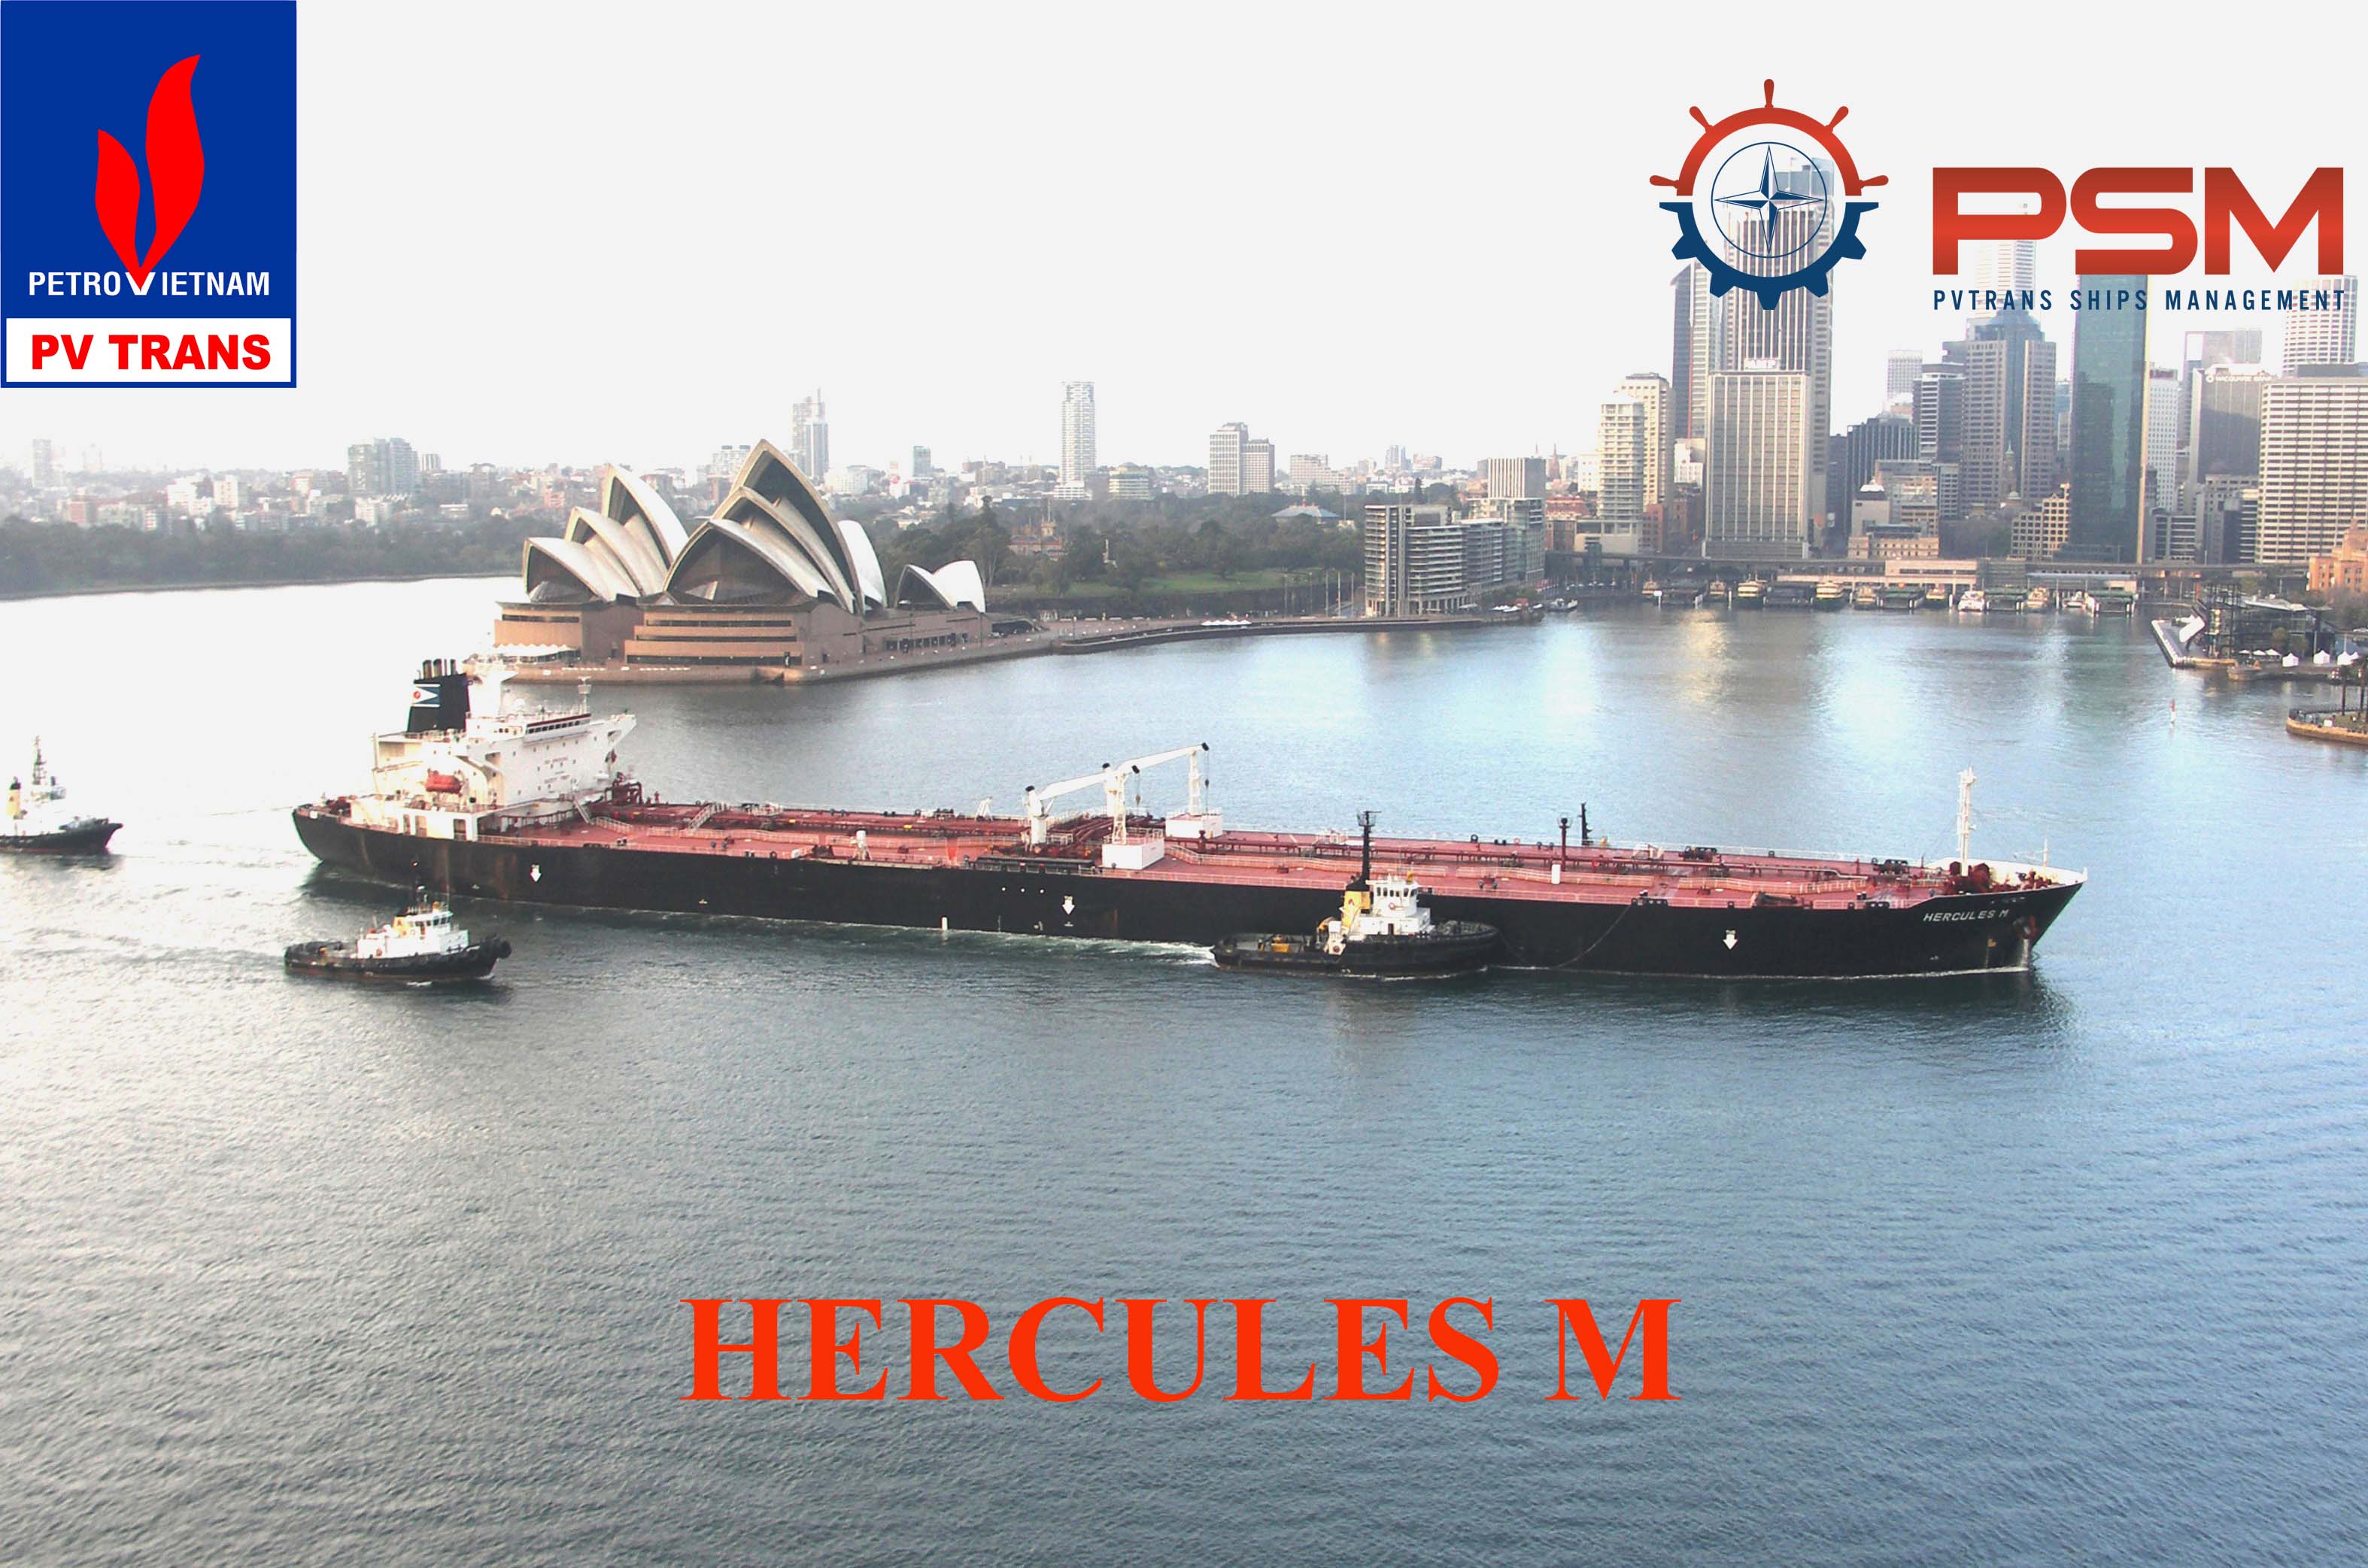 Hercules M - Oil Tanker